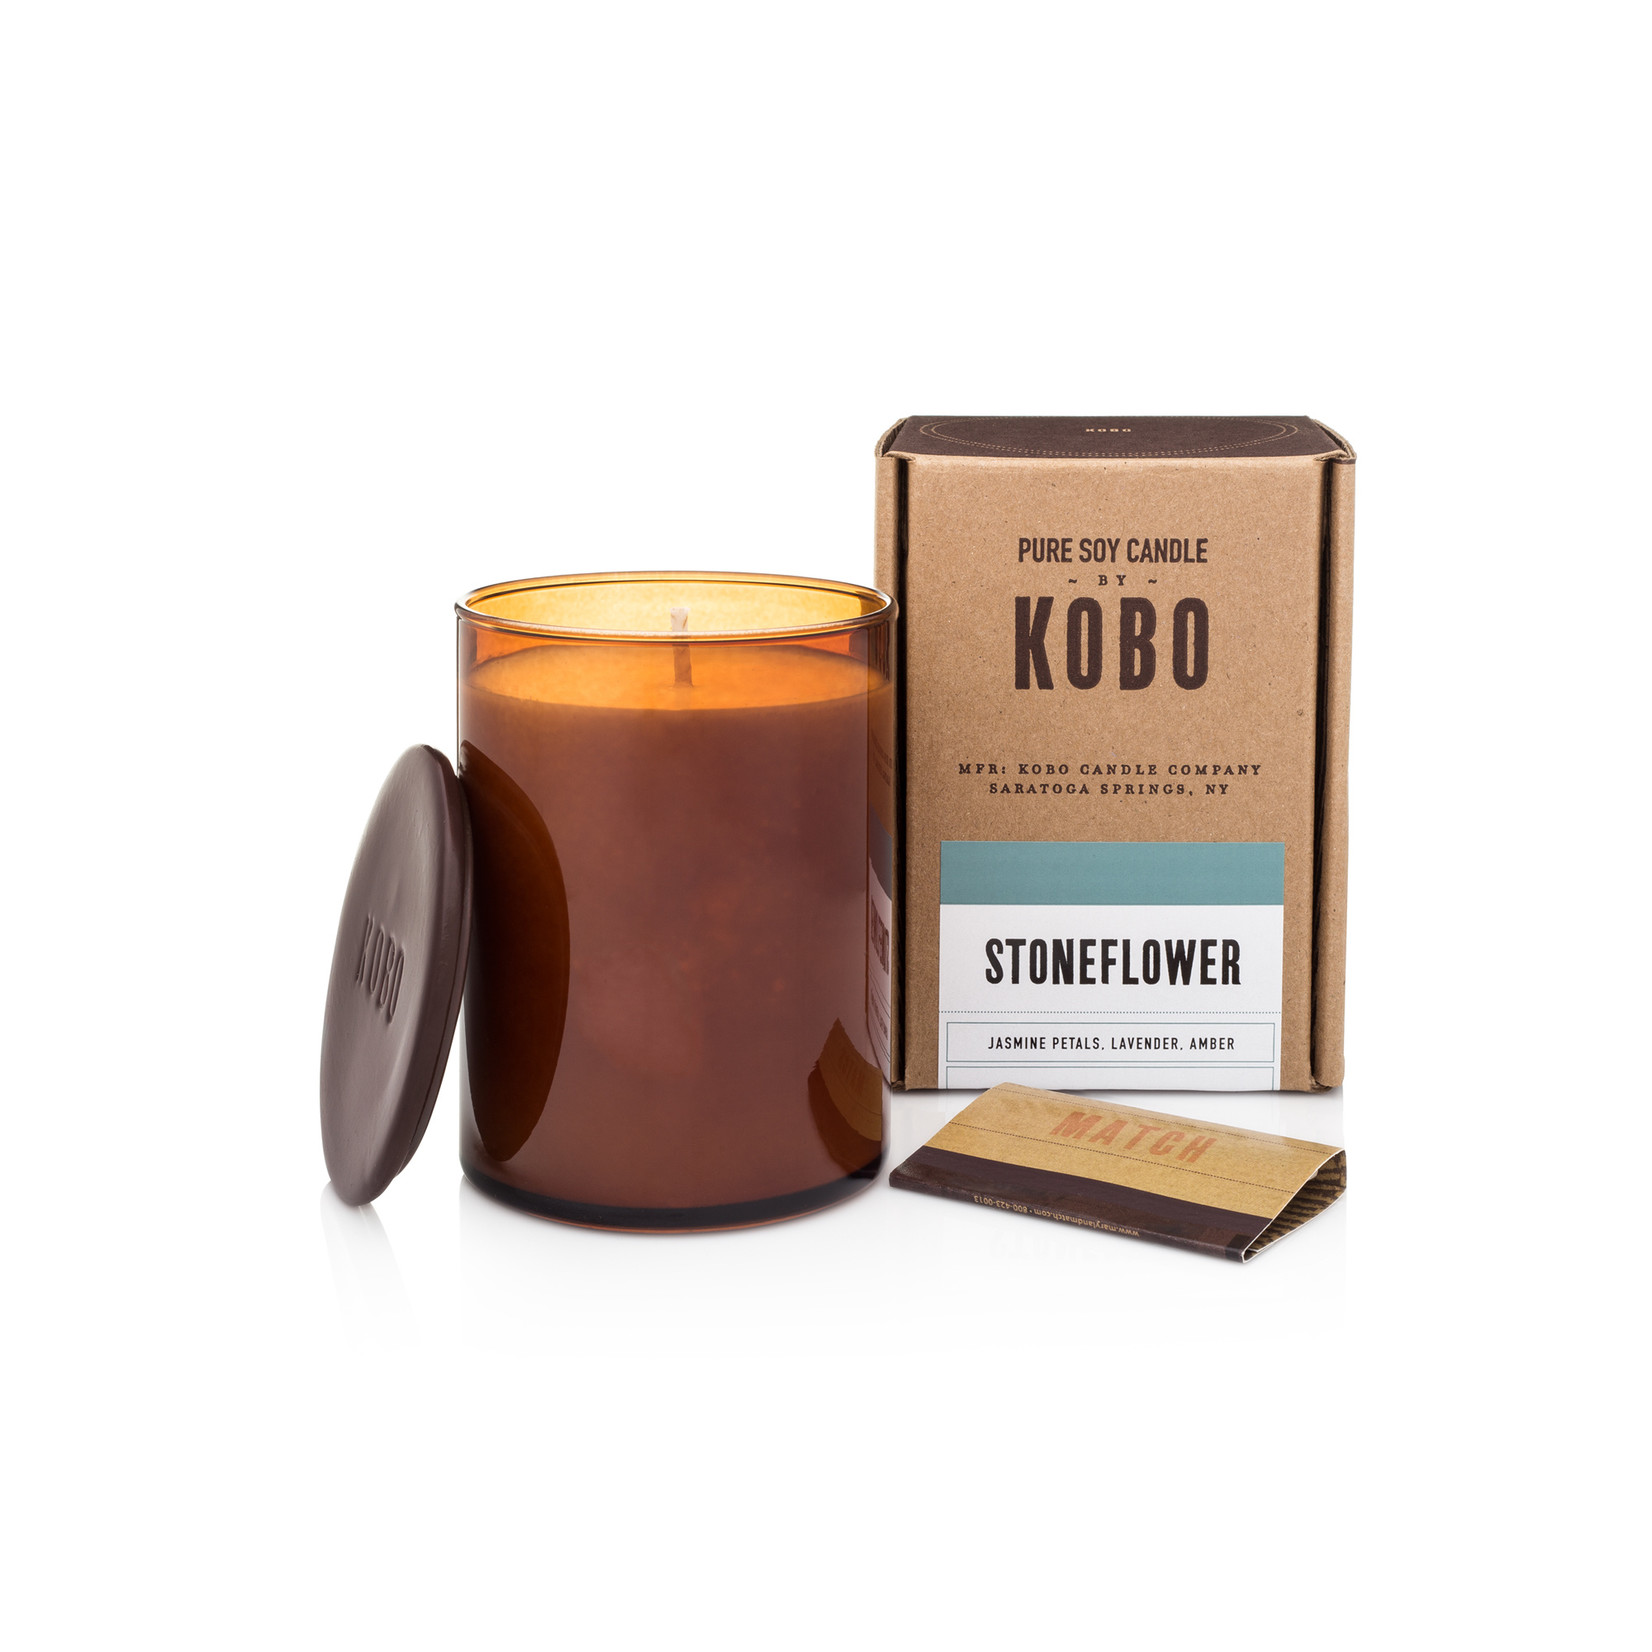 Kobo Stoneflower Candle